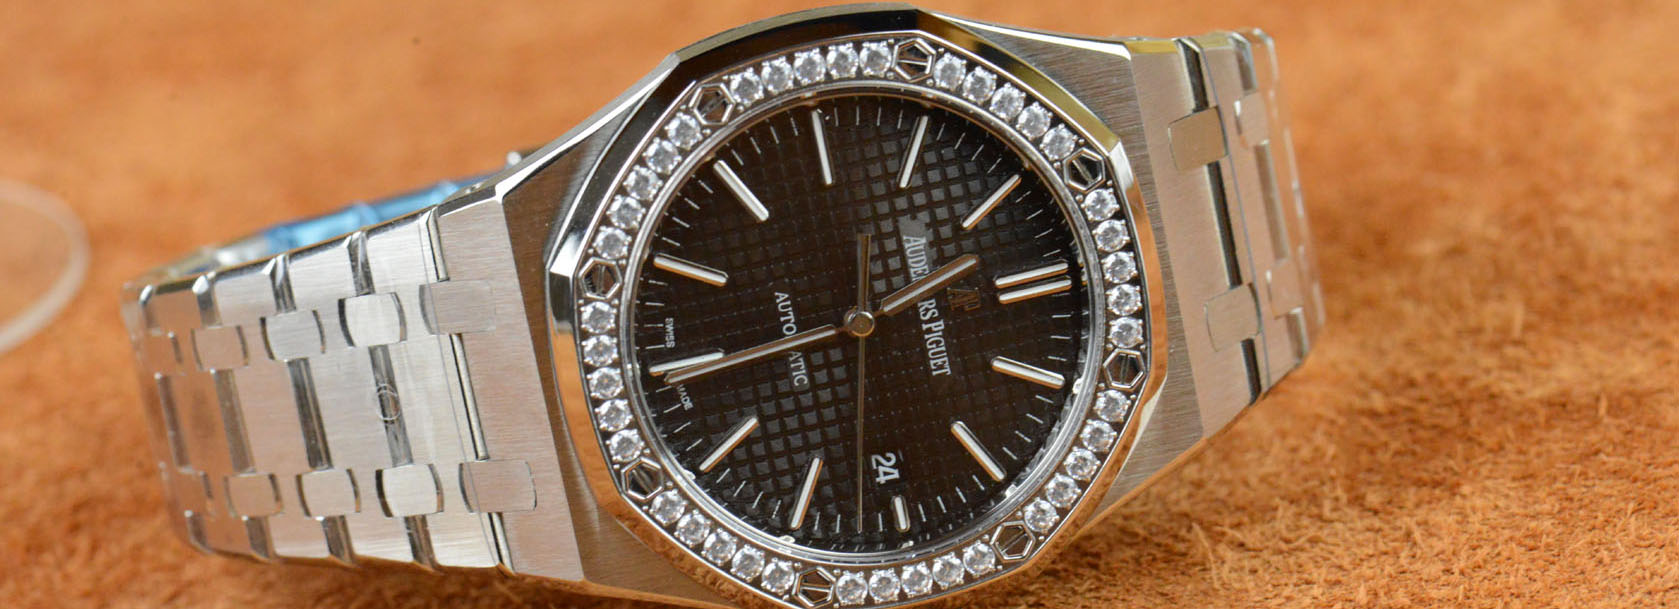 Audemars Piguet Royal Oak 41mm Diamond Replica Wristwatch Review ...